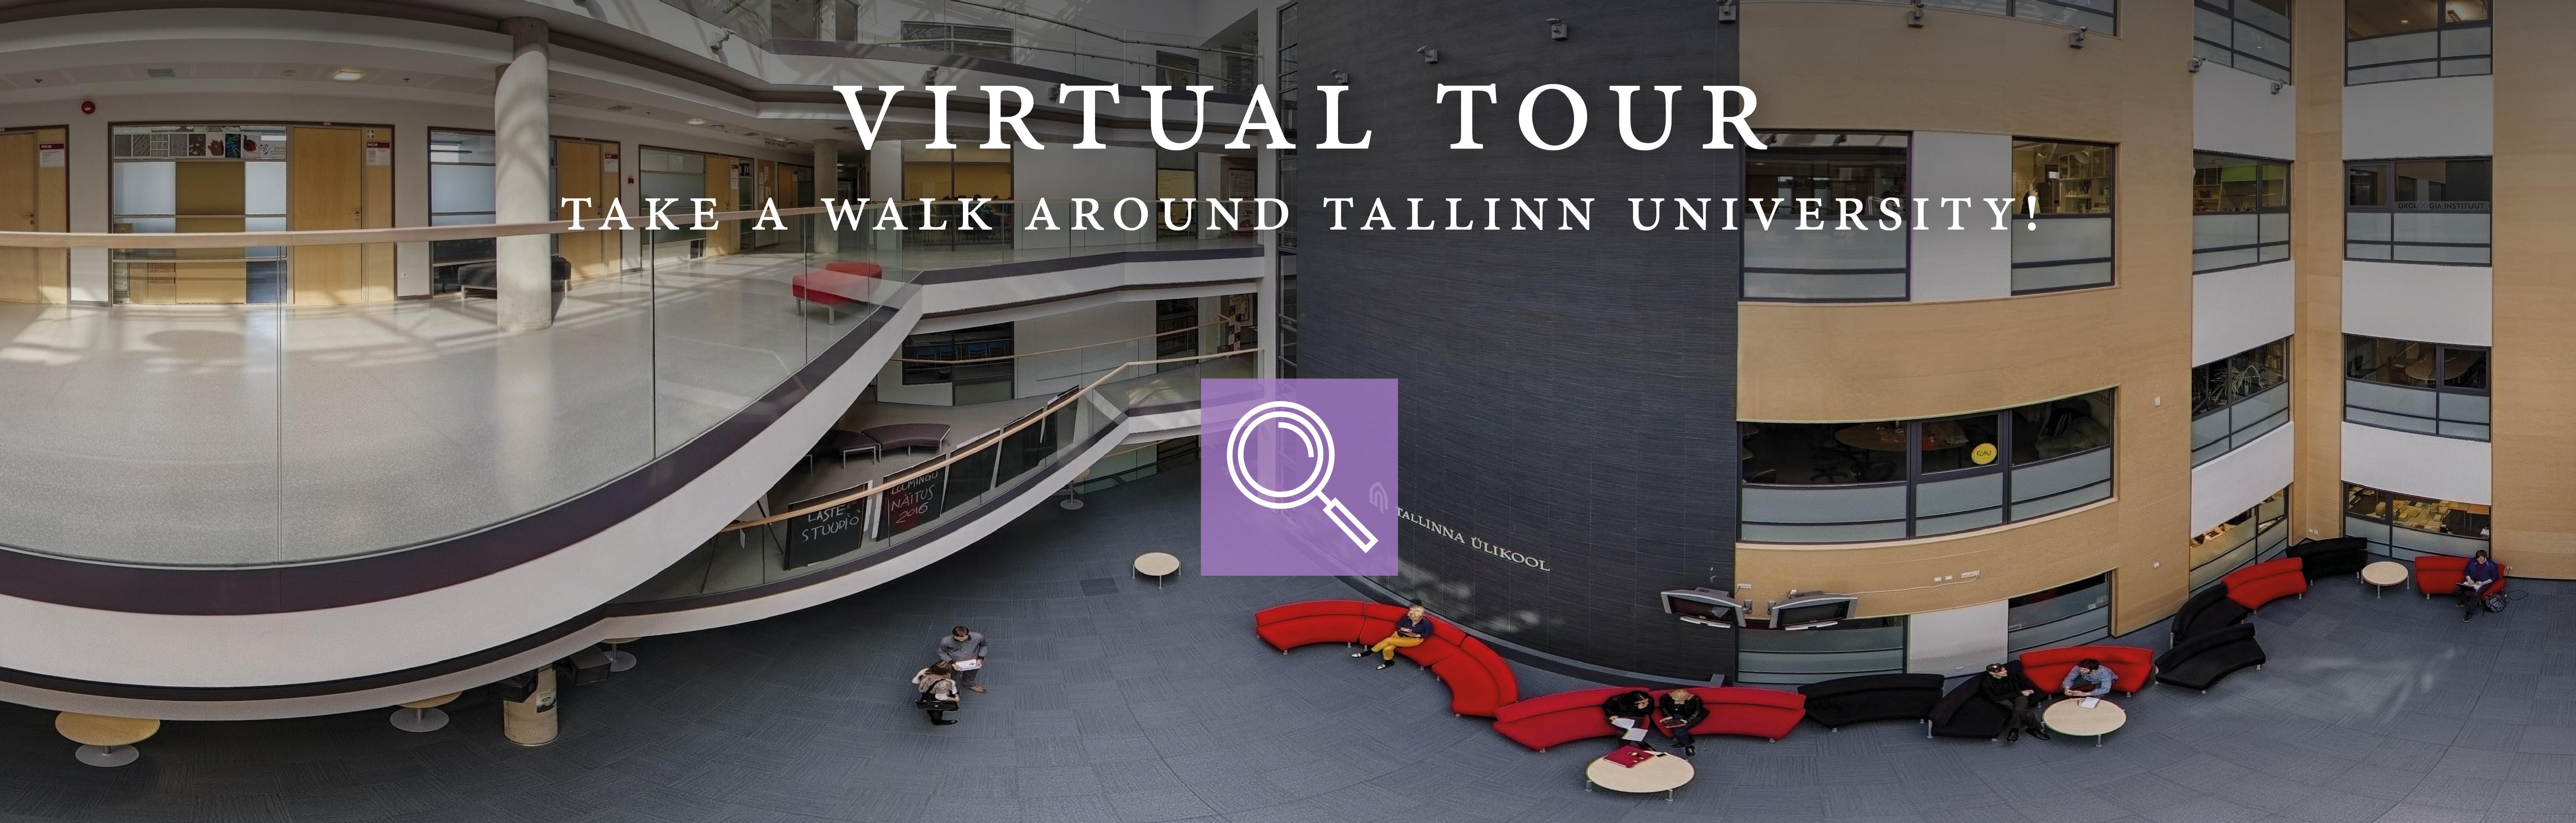 mare atrium virtual tour